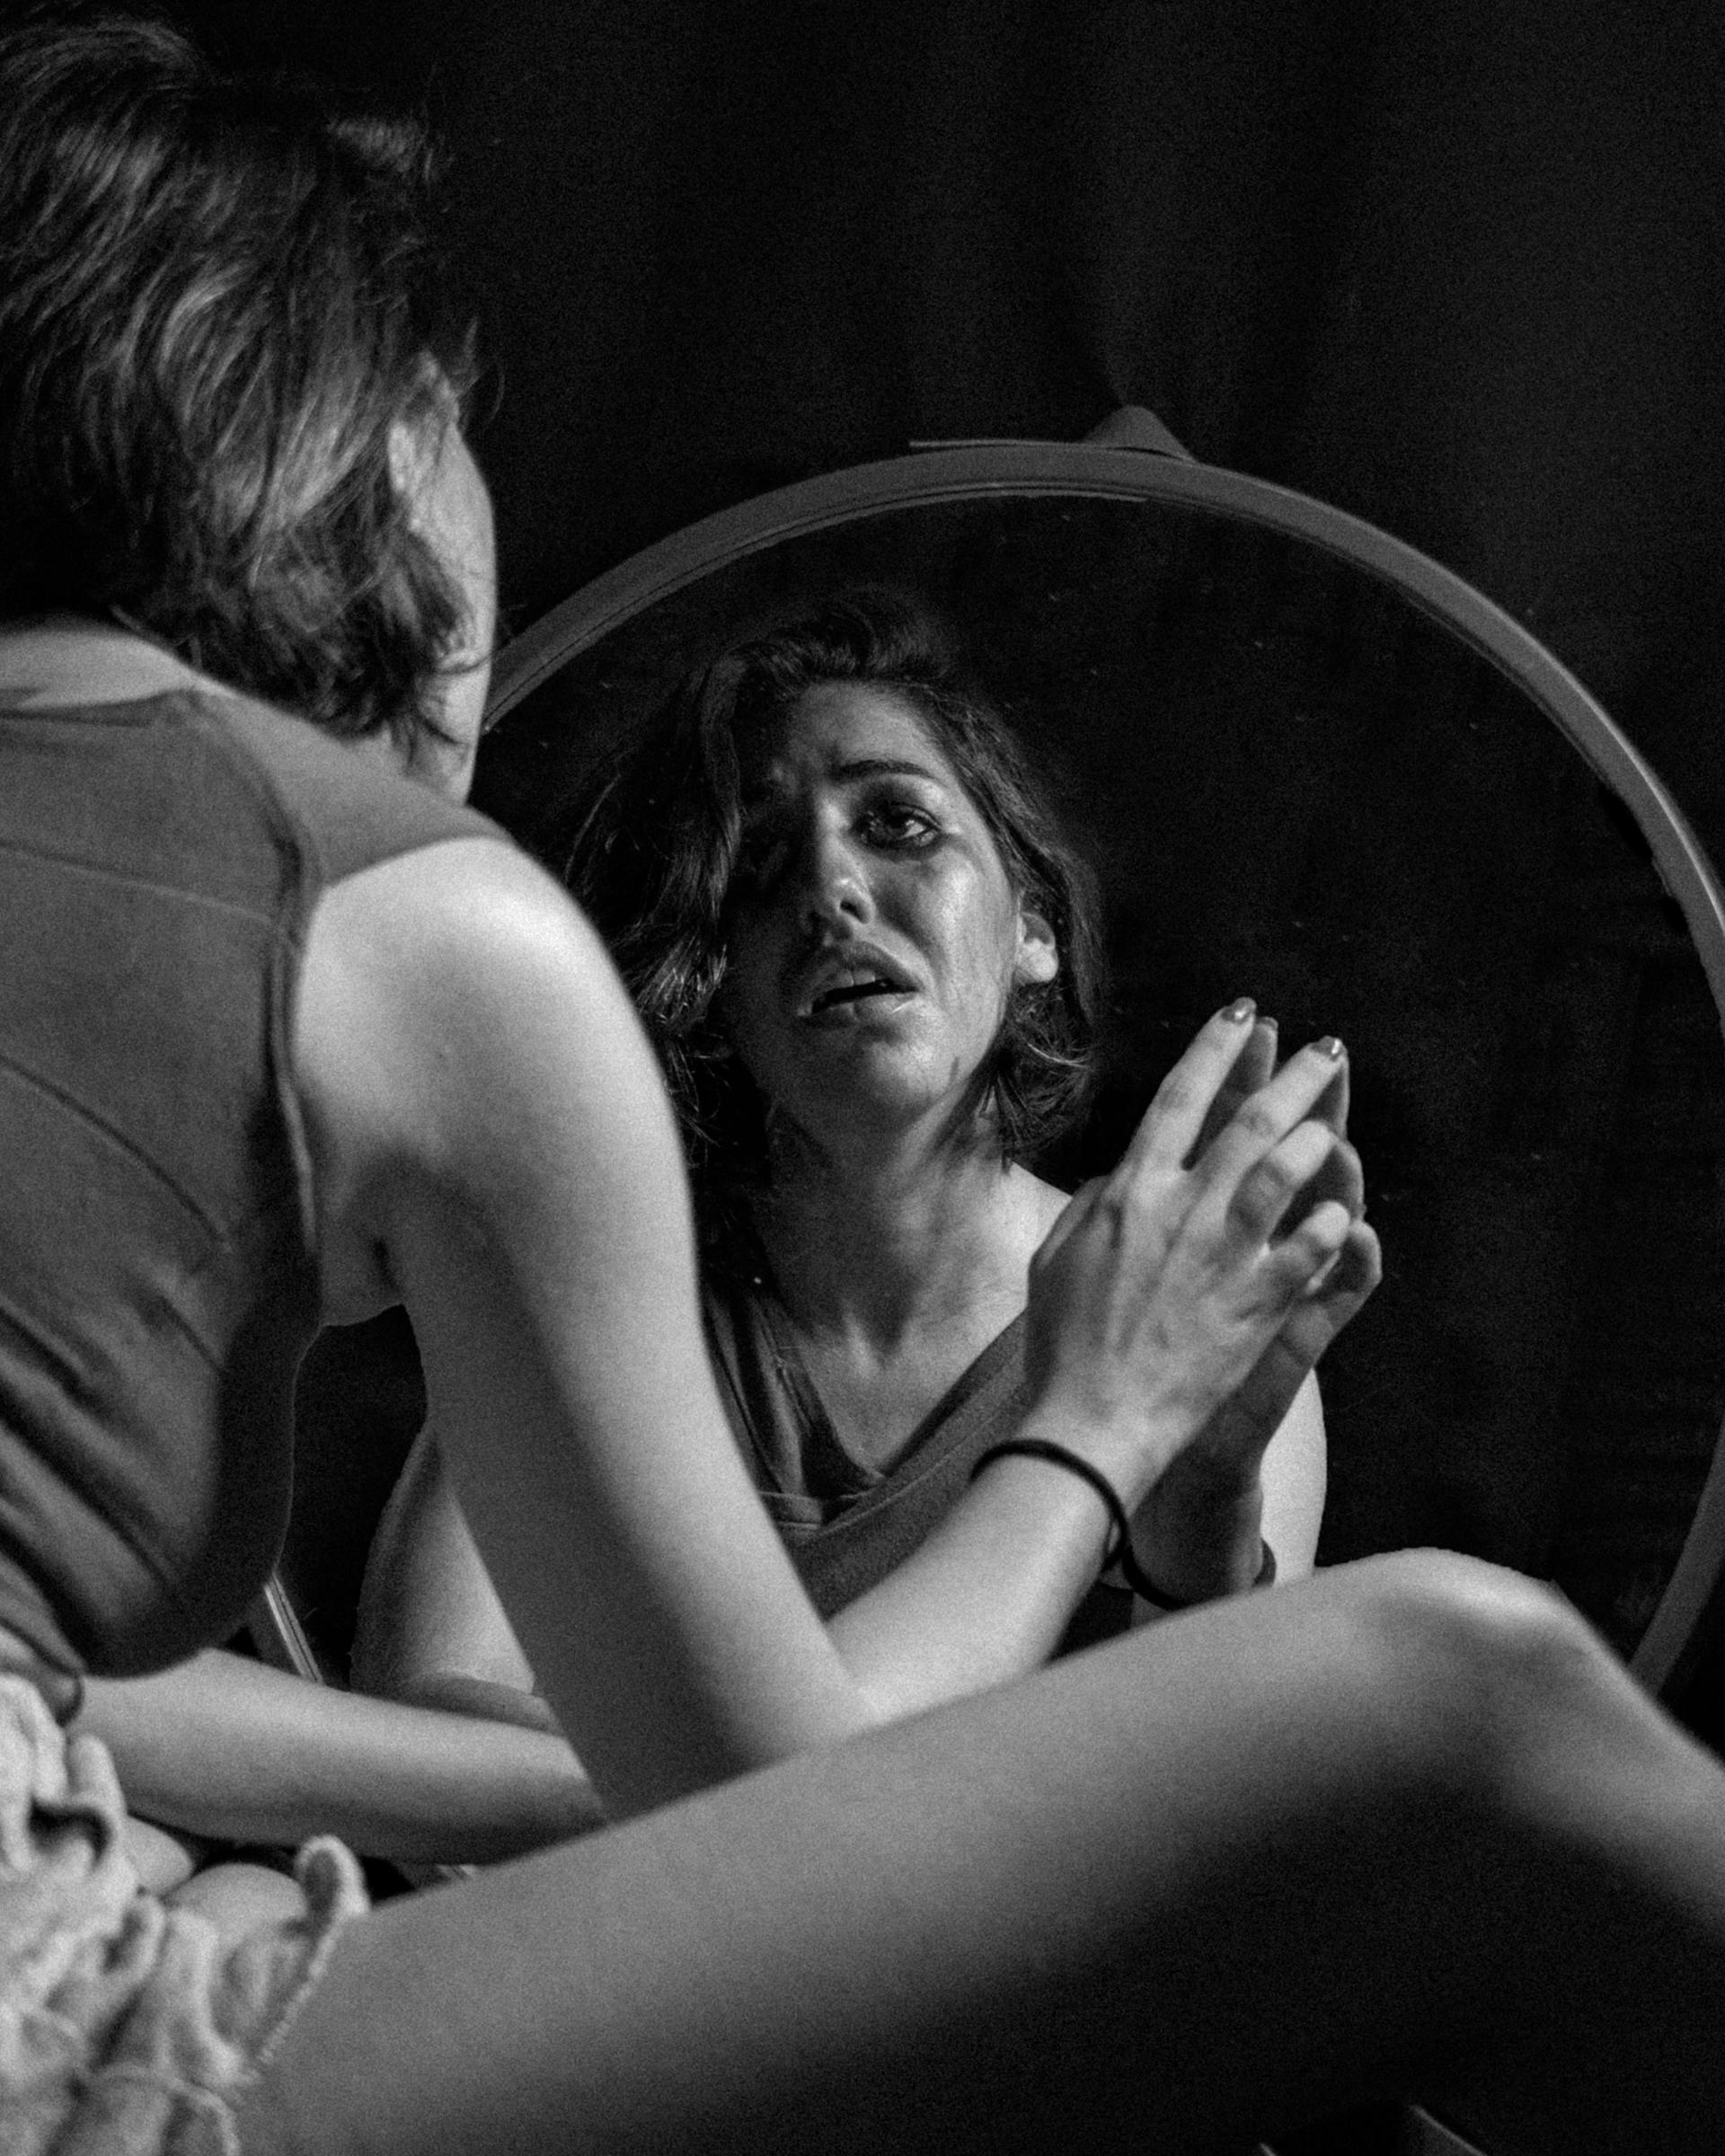 Une femme pleurant devant le miroir | Source : Pexels